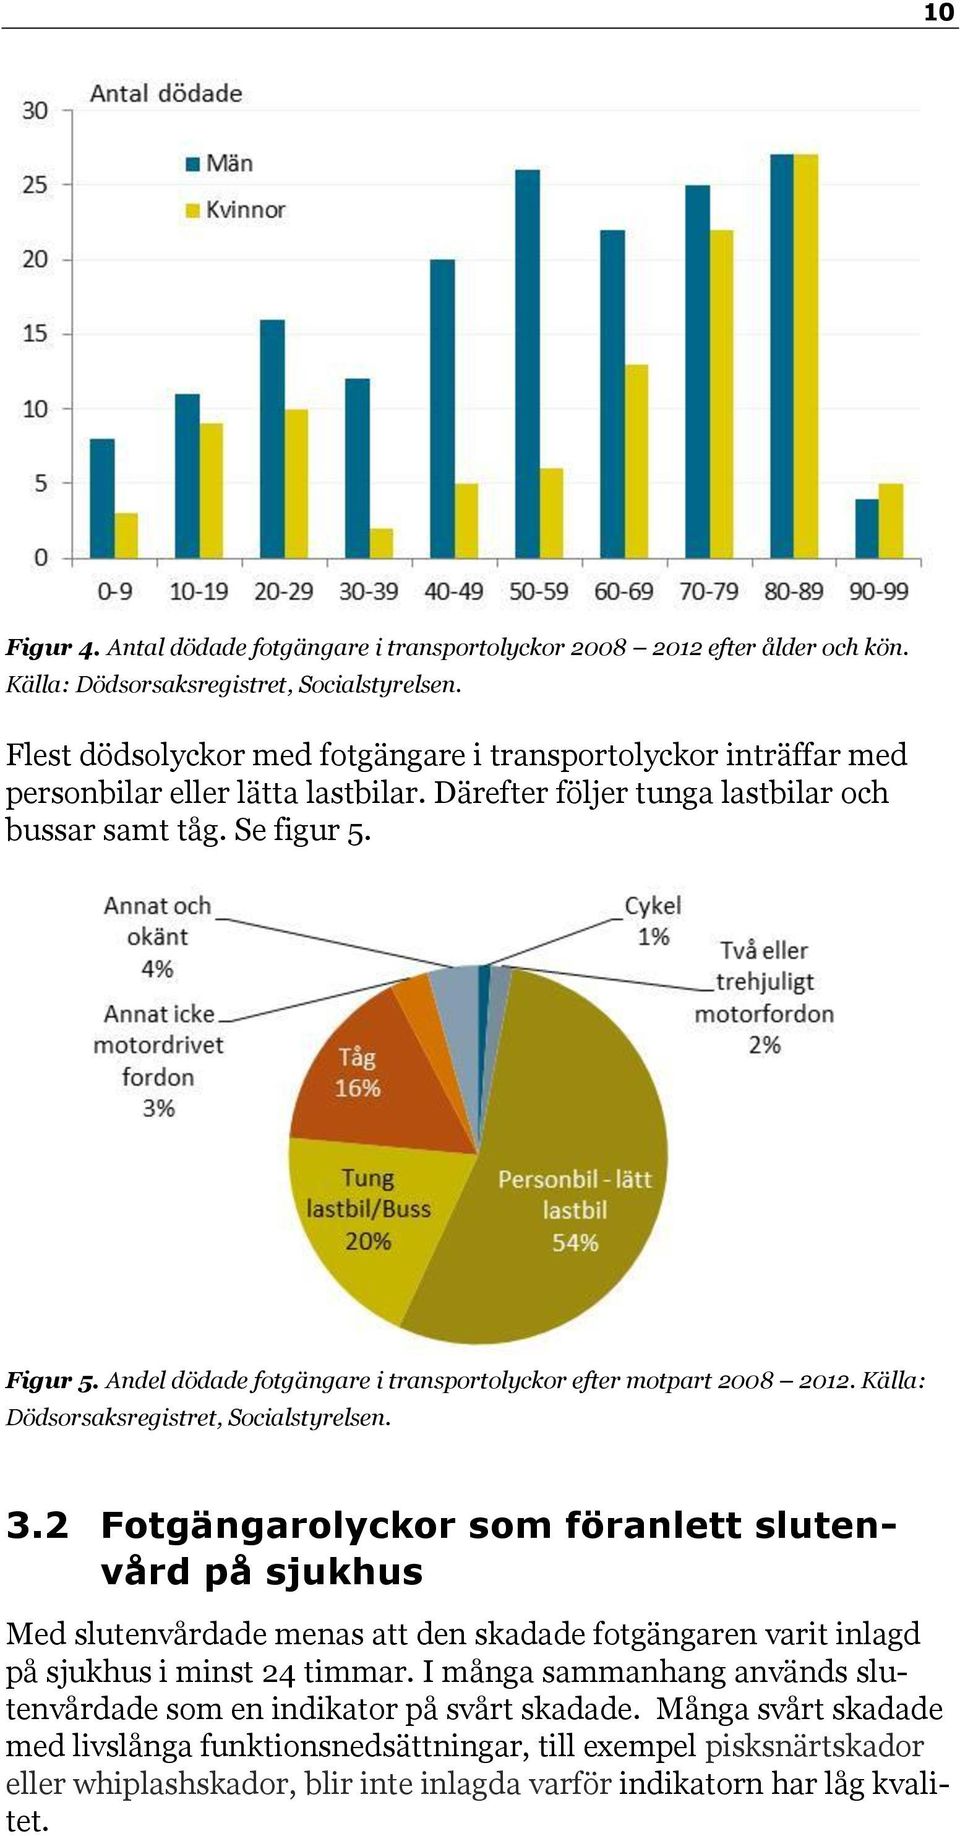 Andel dödade fotgängare i transportolyckor efter motpart 2008 2012. Källa: Dödsorsaksregistret, Socialstyrelsen. 3.